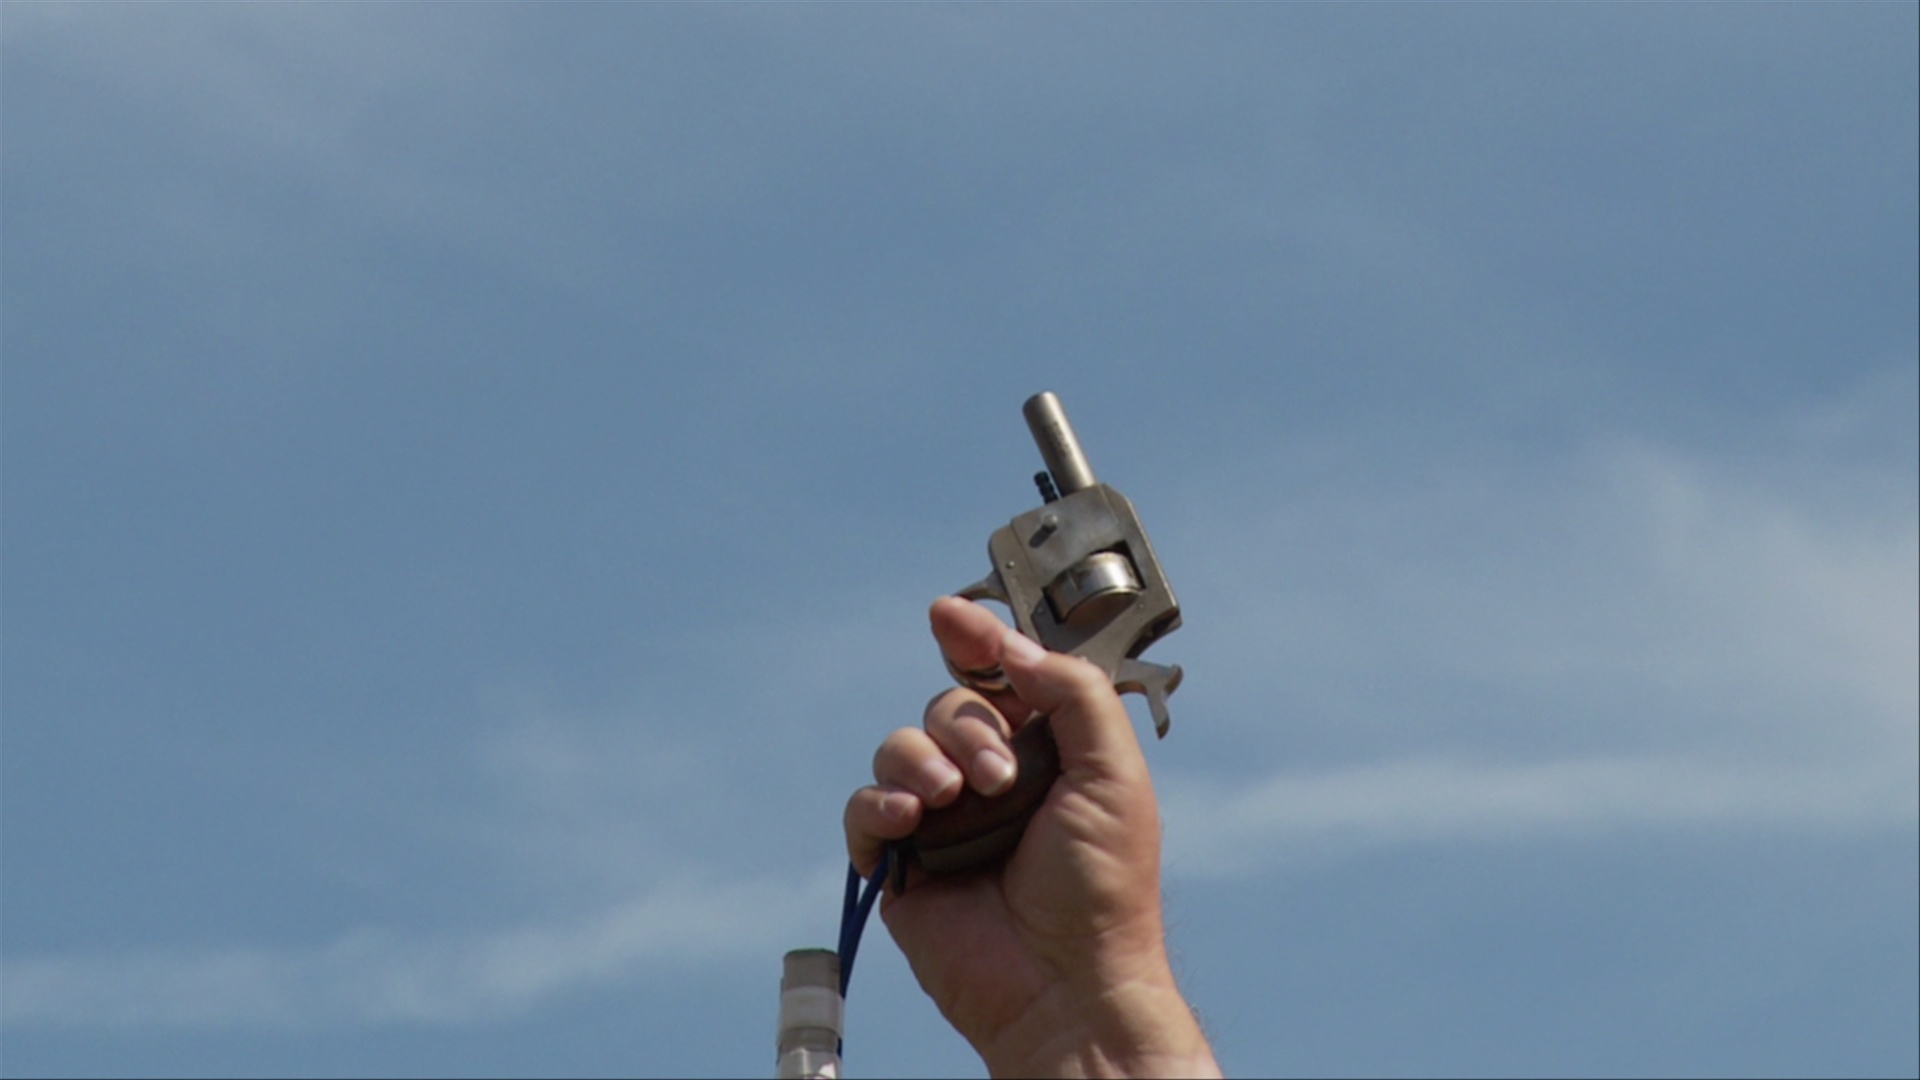 CU，一个人在空中开枪，手持枪的视图/亚特兰大，乔治亚州，美国视频素材